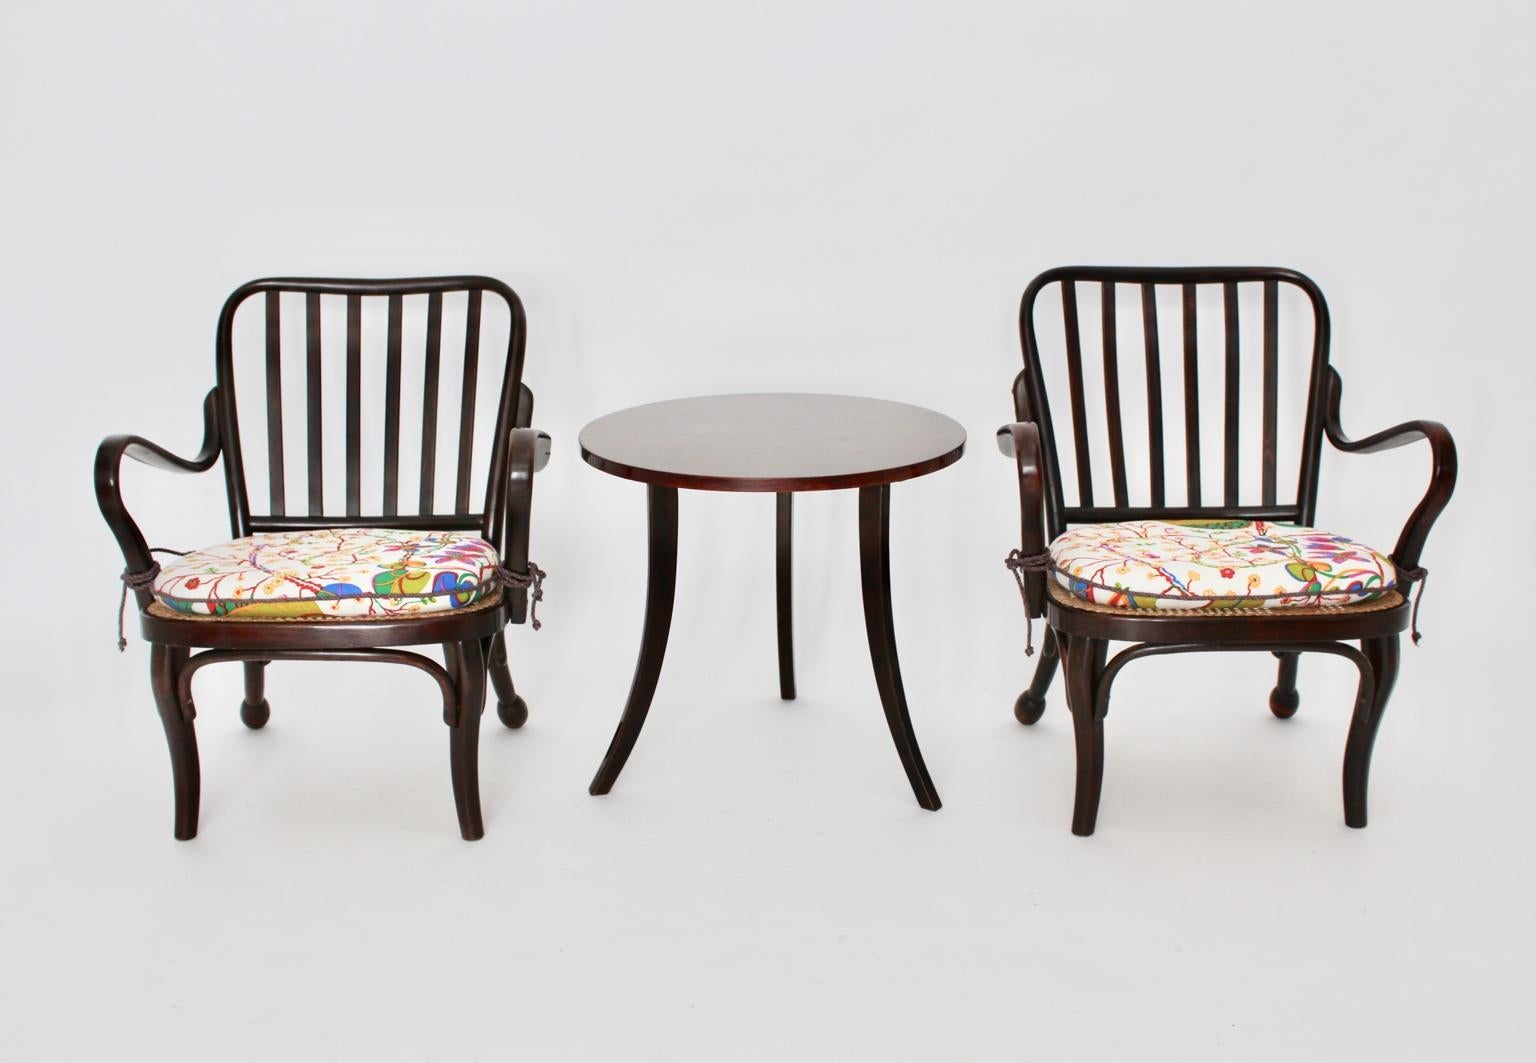 Art Deco Vintage Holzsessel und Couchtisch von Josef Frank Wien um 1930.
Wir präsentieren ein wunderschönes Ensemble aus zwei Sesseln und einem Couchtisch von Josef Frank, Wien um 1930.
Hier sind die Details zu den Sesseln:
Sesselpaar von Josef